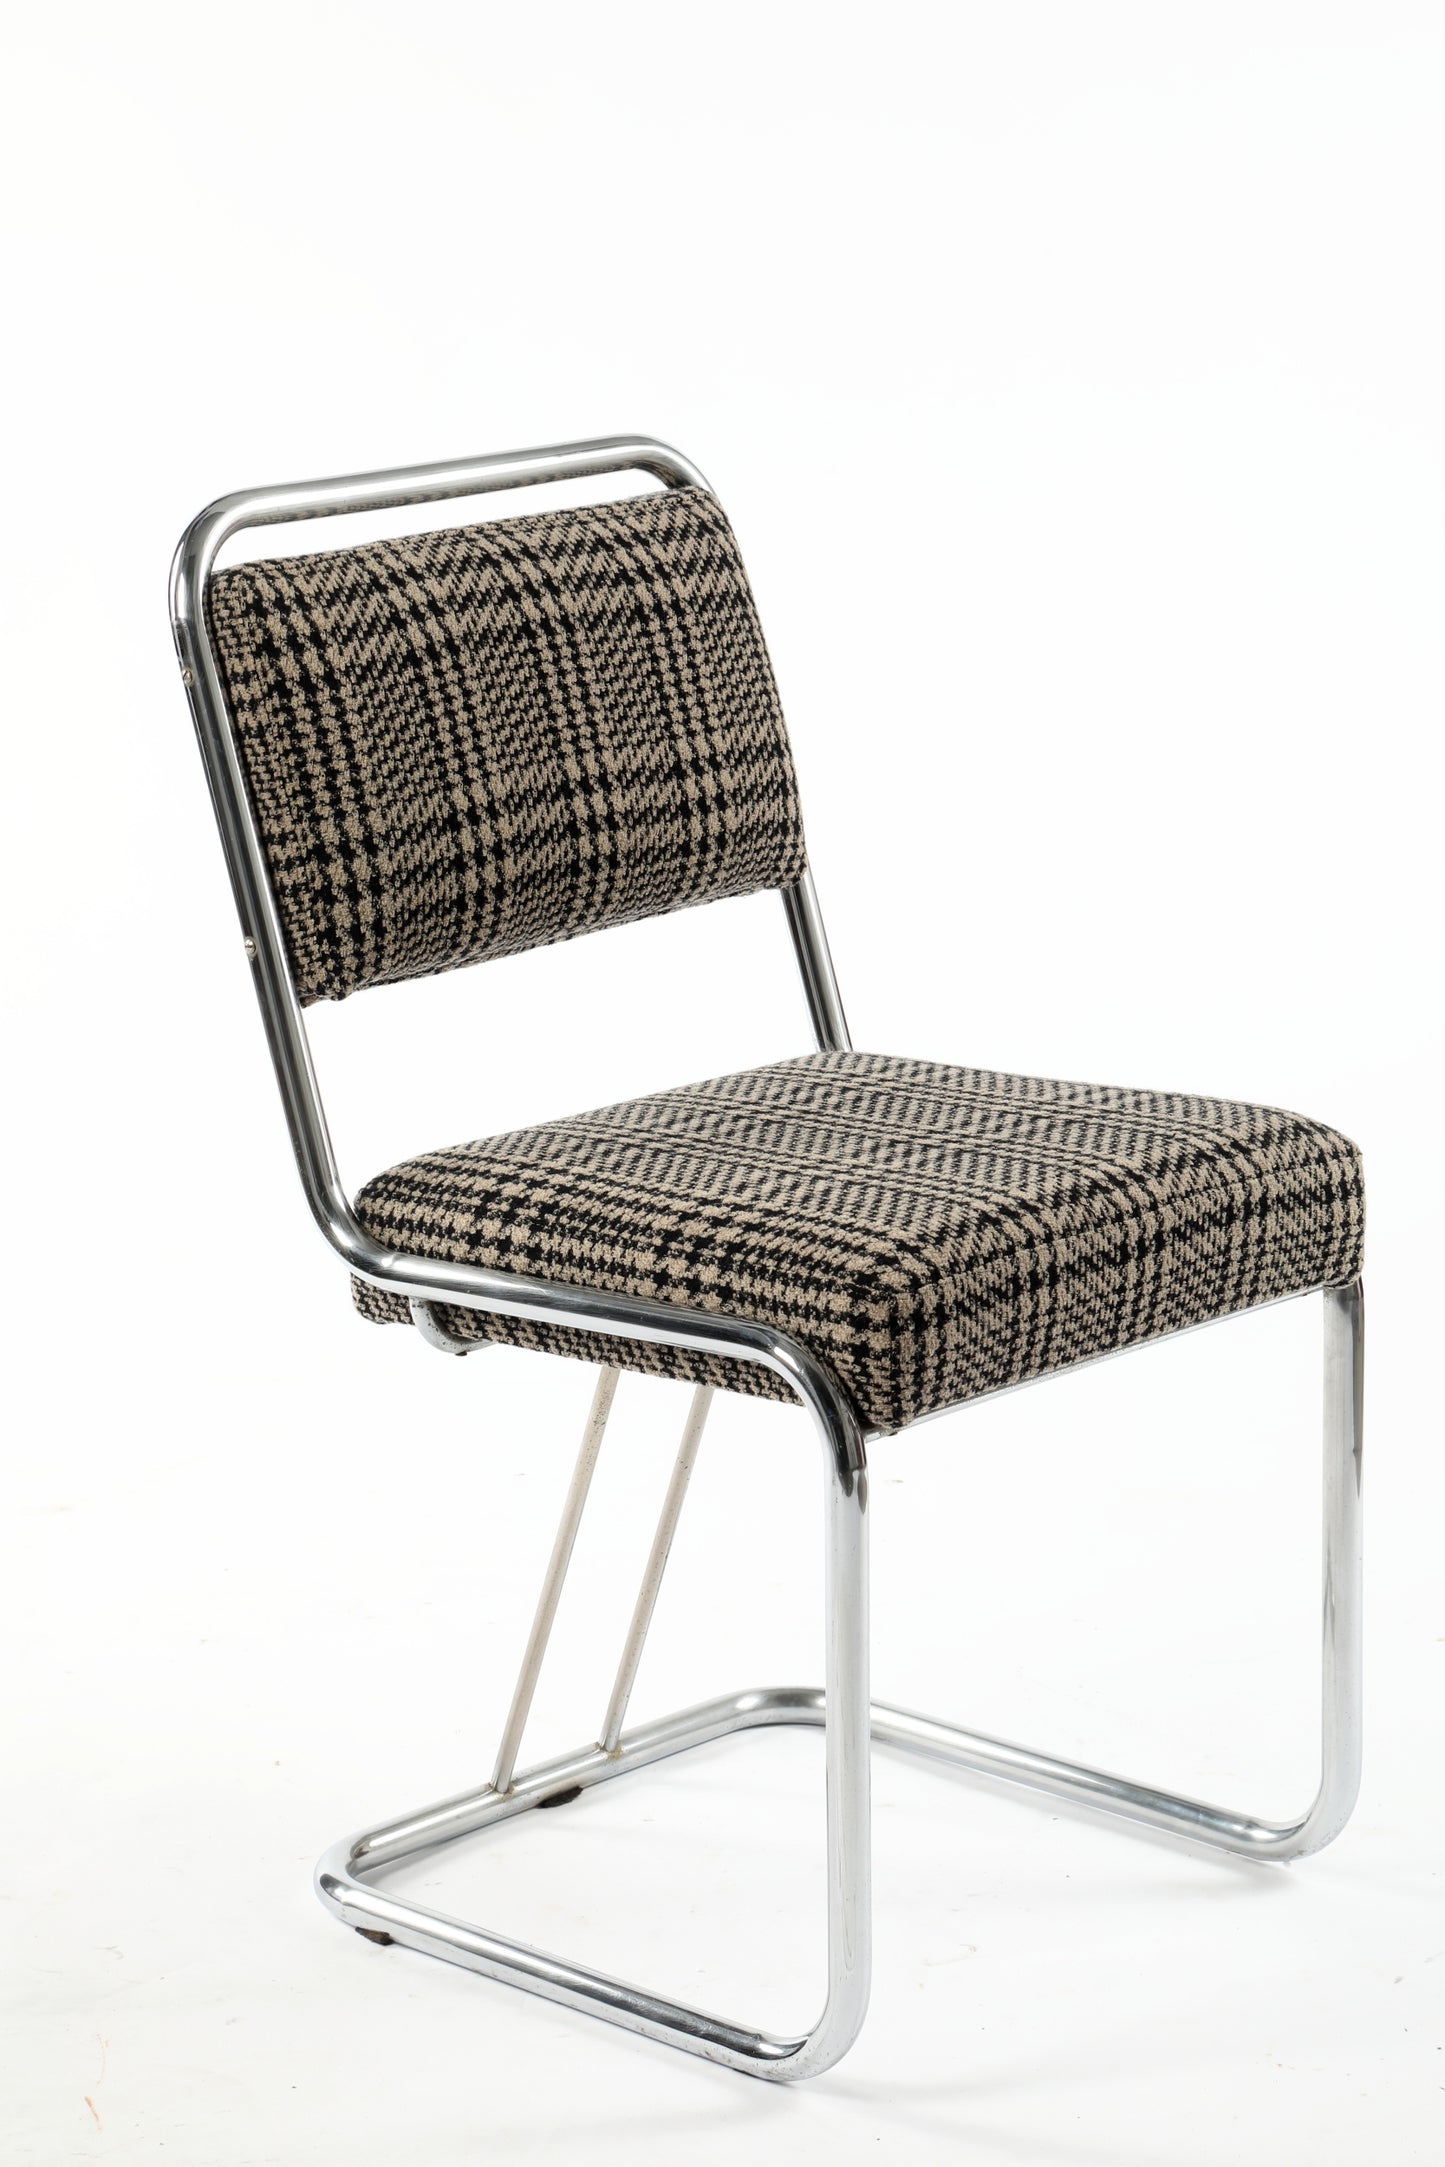 Quattro sedie anni 70 lana e acciaio